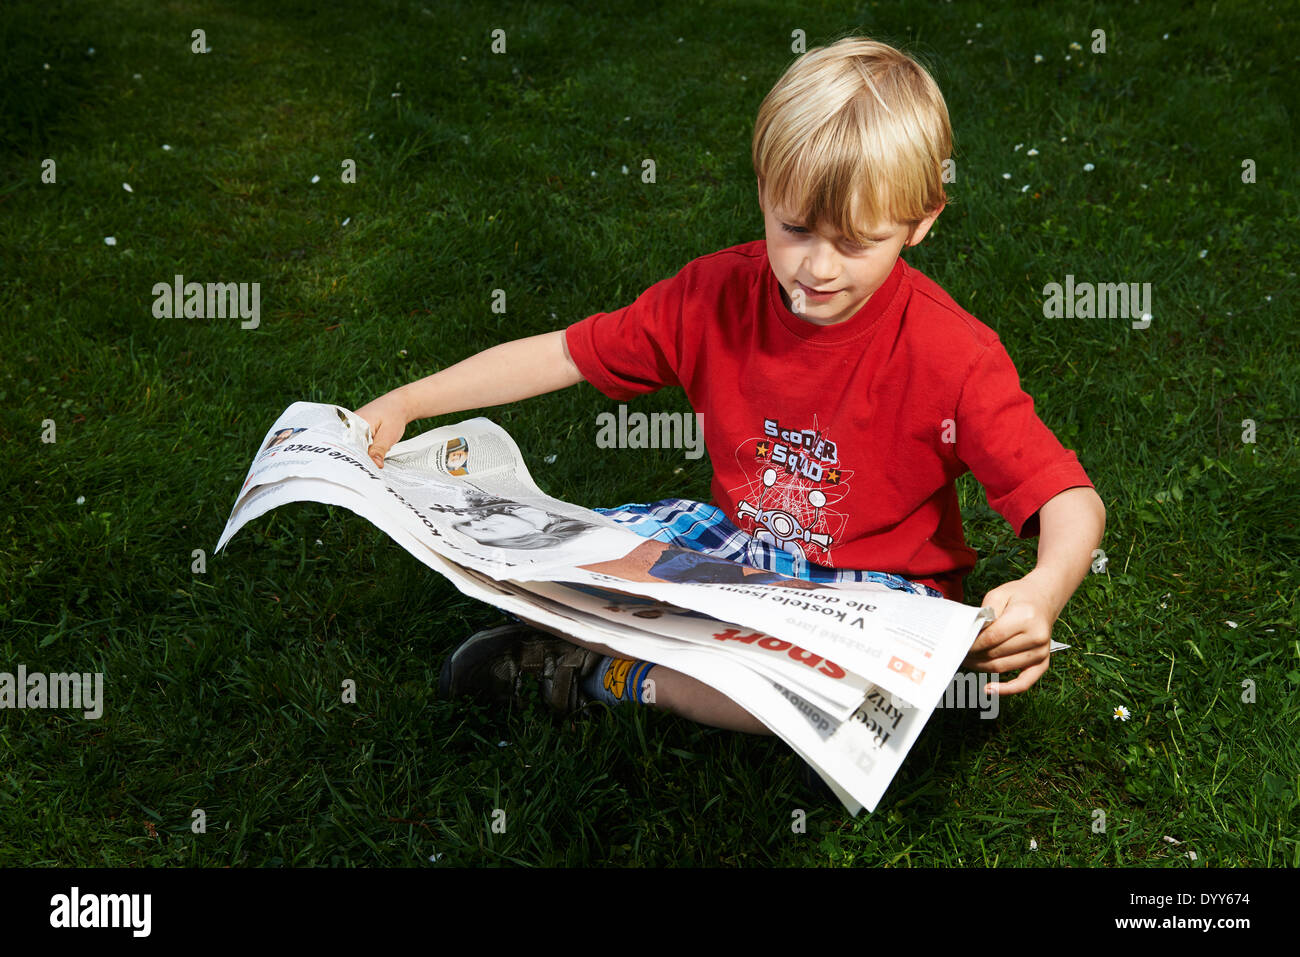 Ein Kind blonde junge liest Zeitung außerhalb am grünen Rasen Stockfoto